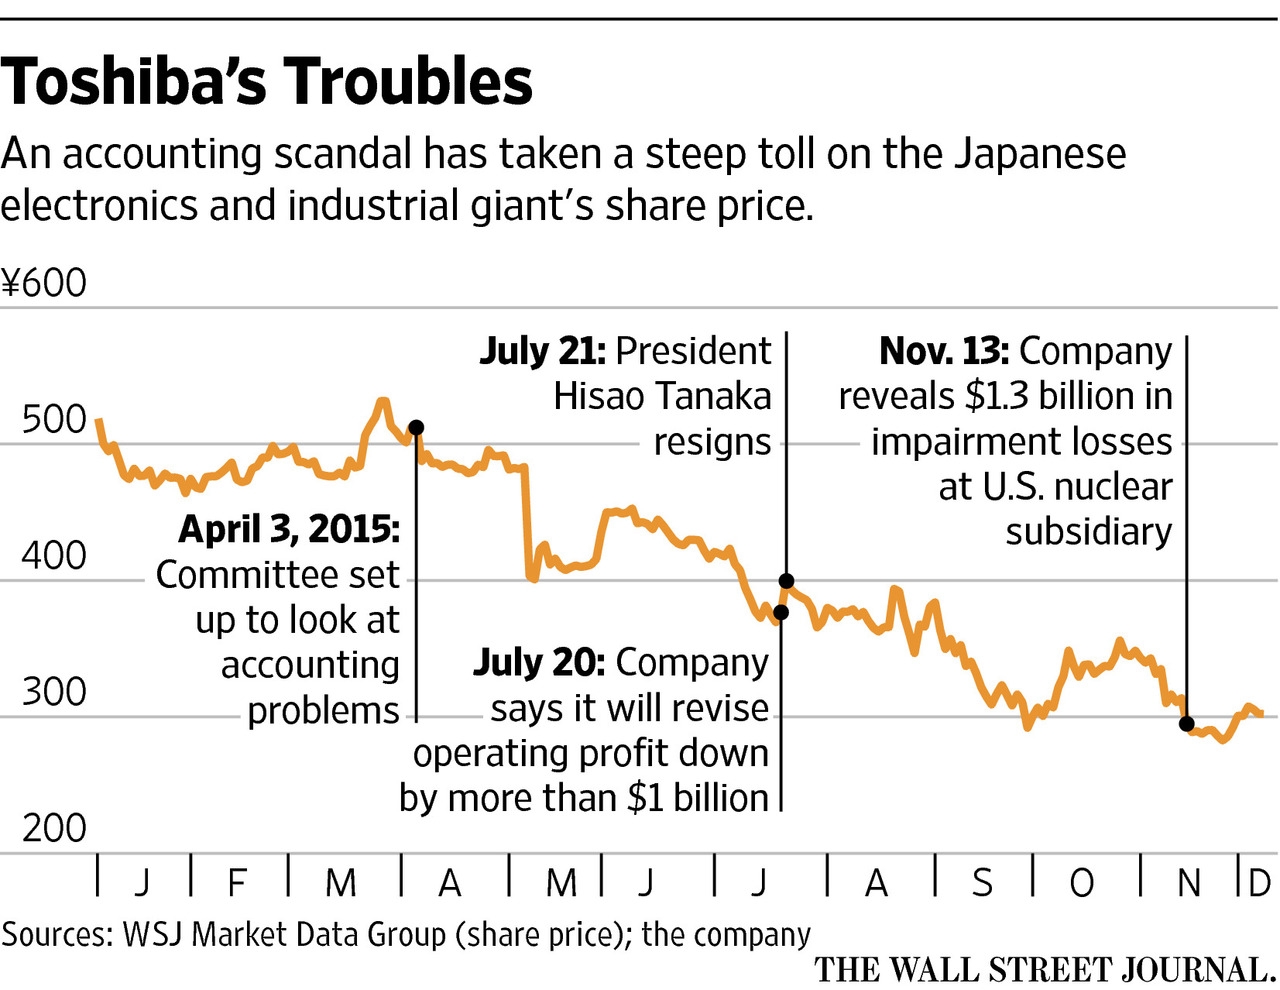 Toshiba, tượng đài nước Nhật sụp đổ vì các vụ bê bối